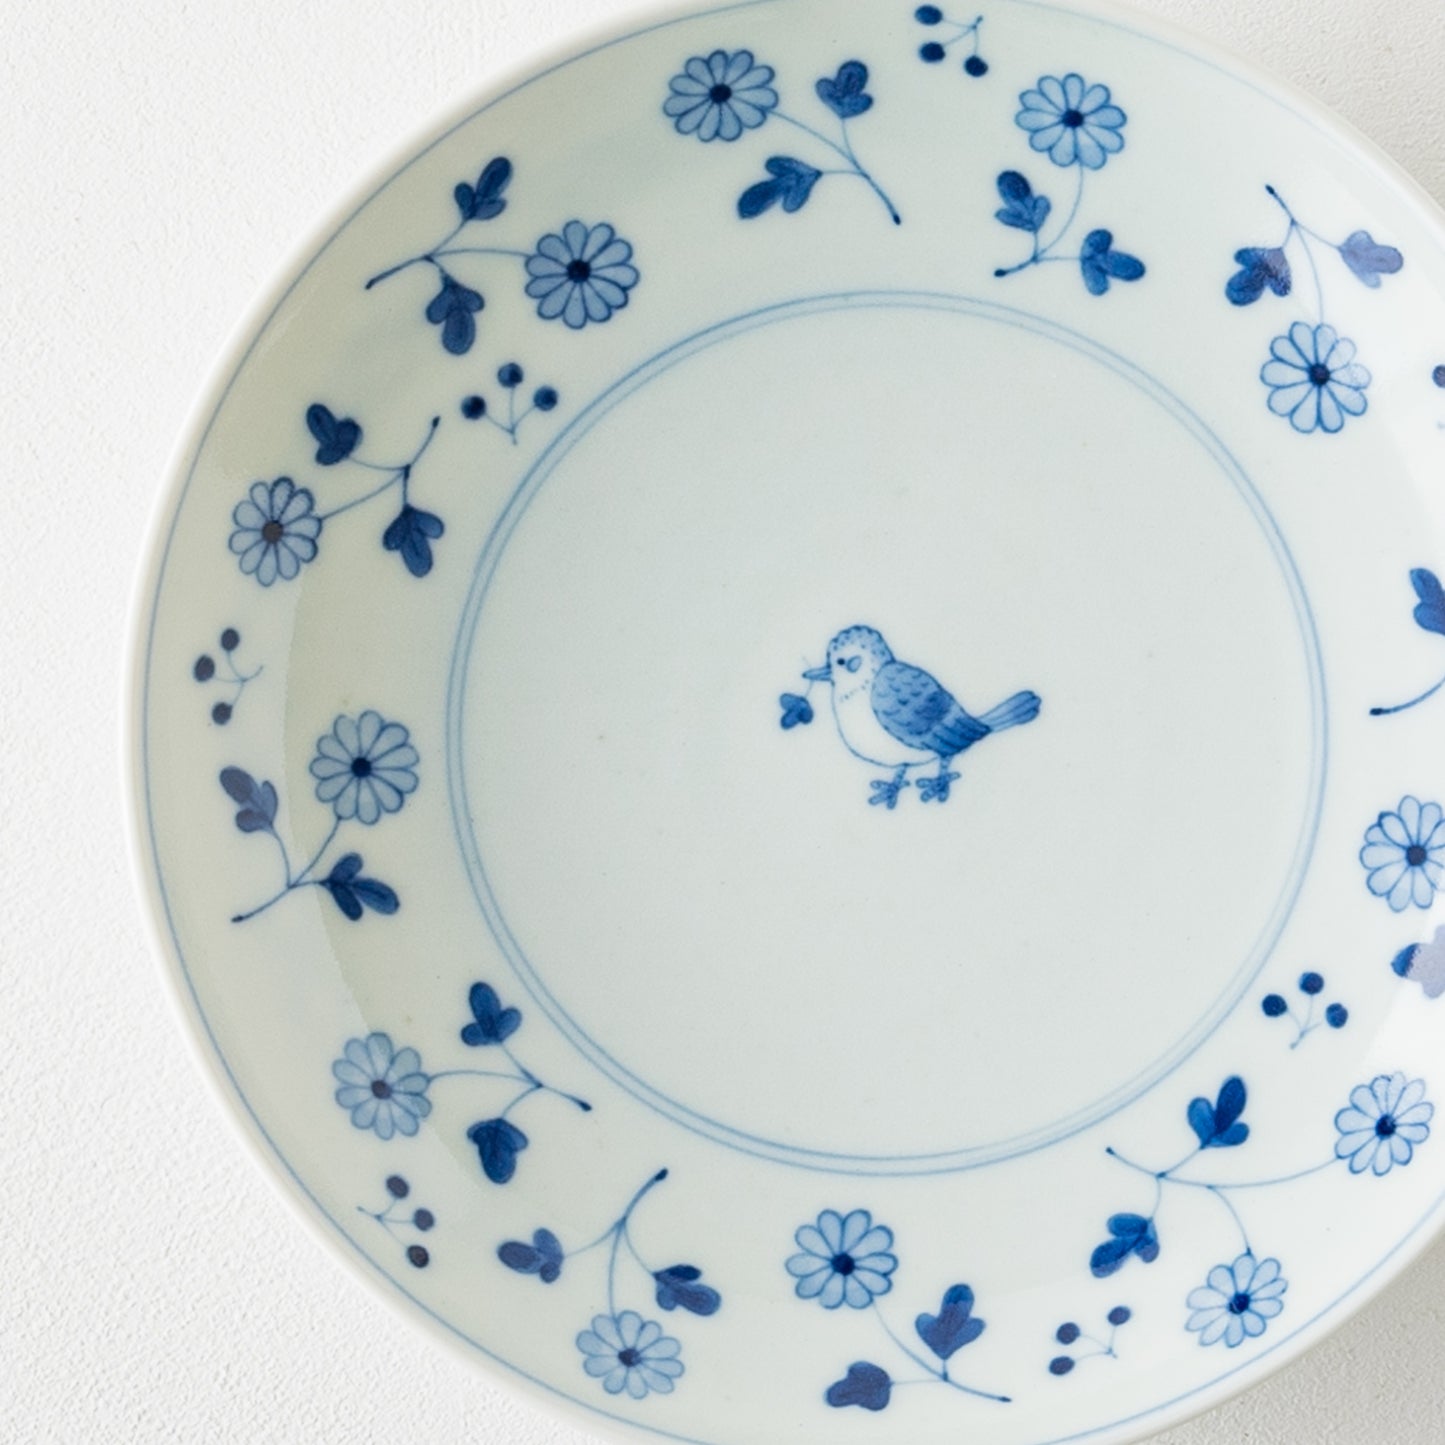 石川理恵さんの花と鳥の皿